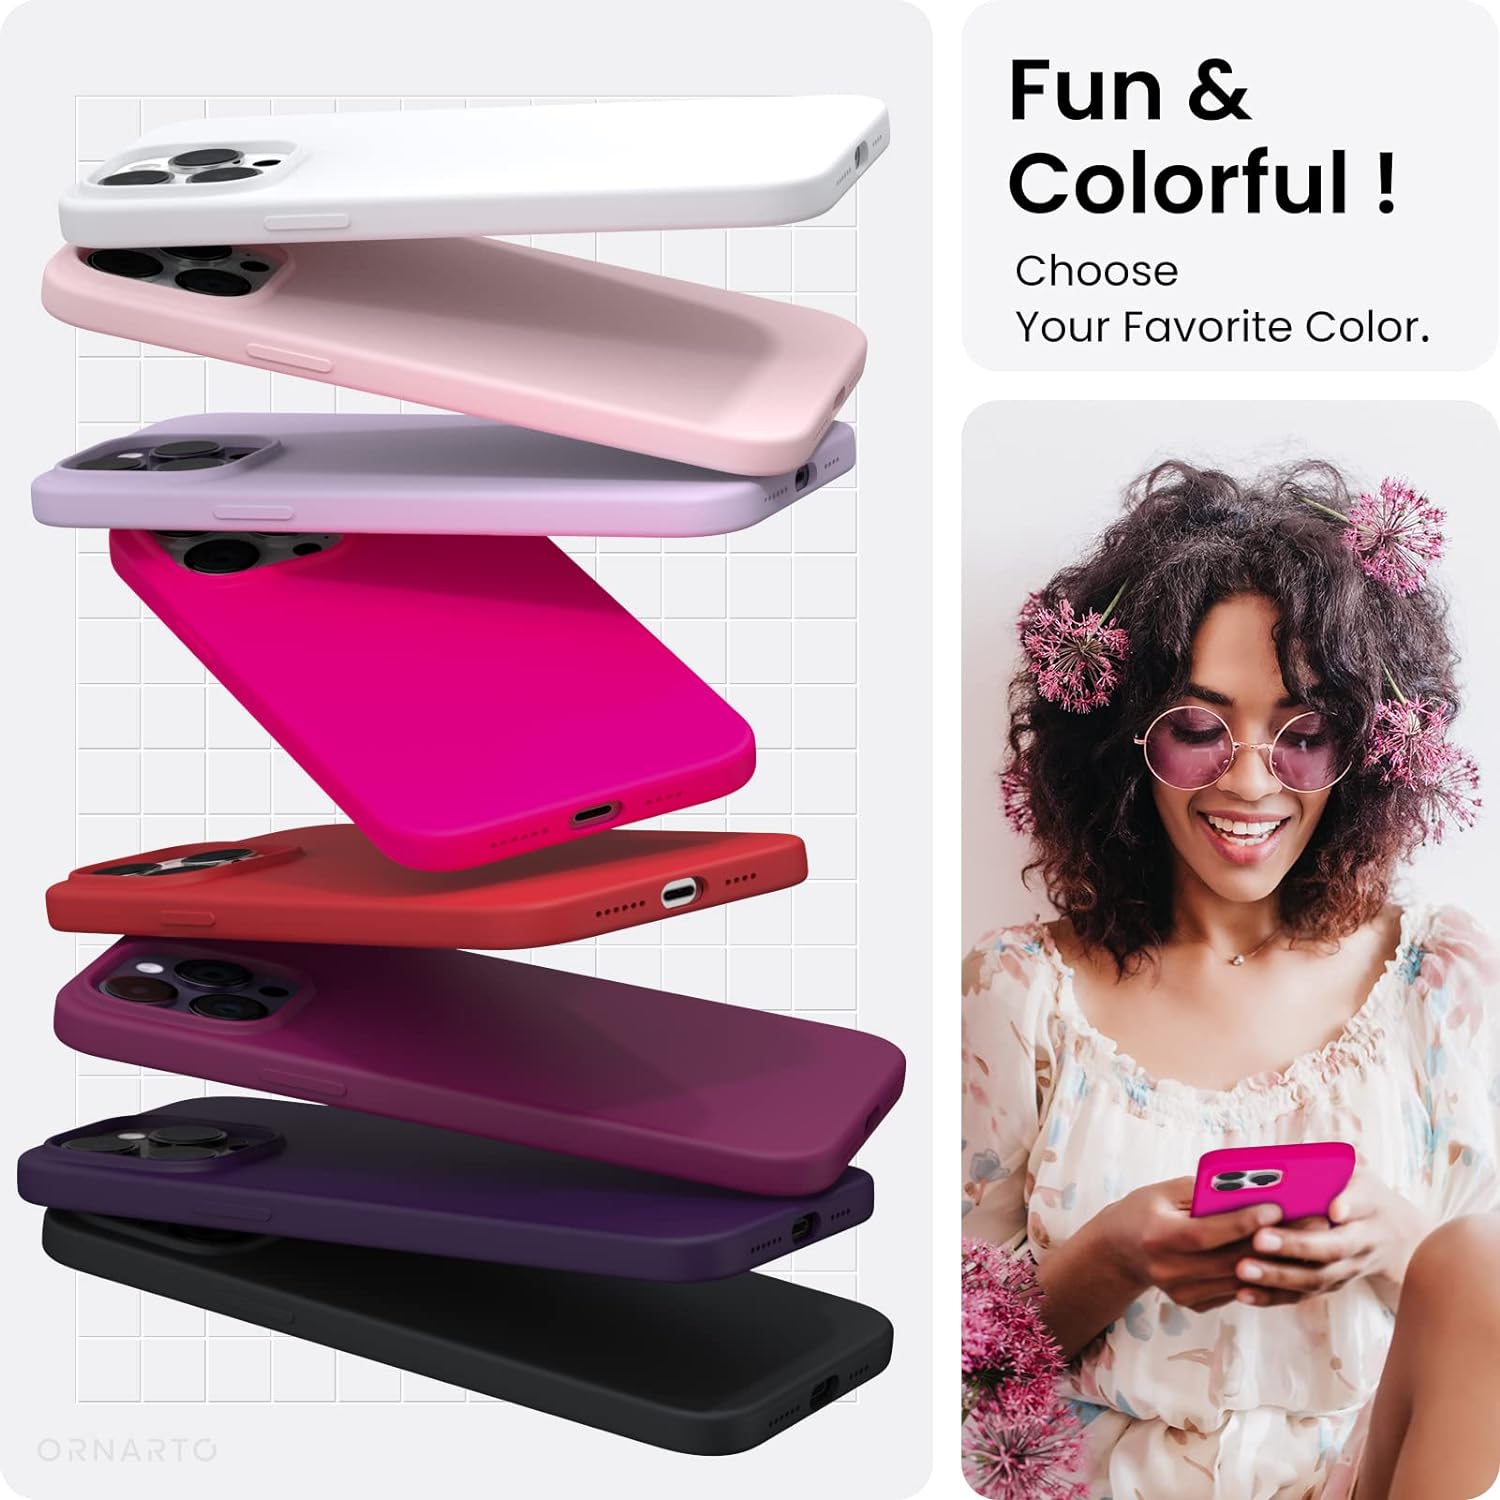 Weiche, matte Silikonhülle für iPhone-Modell, Pink